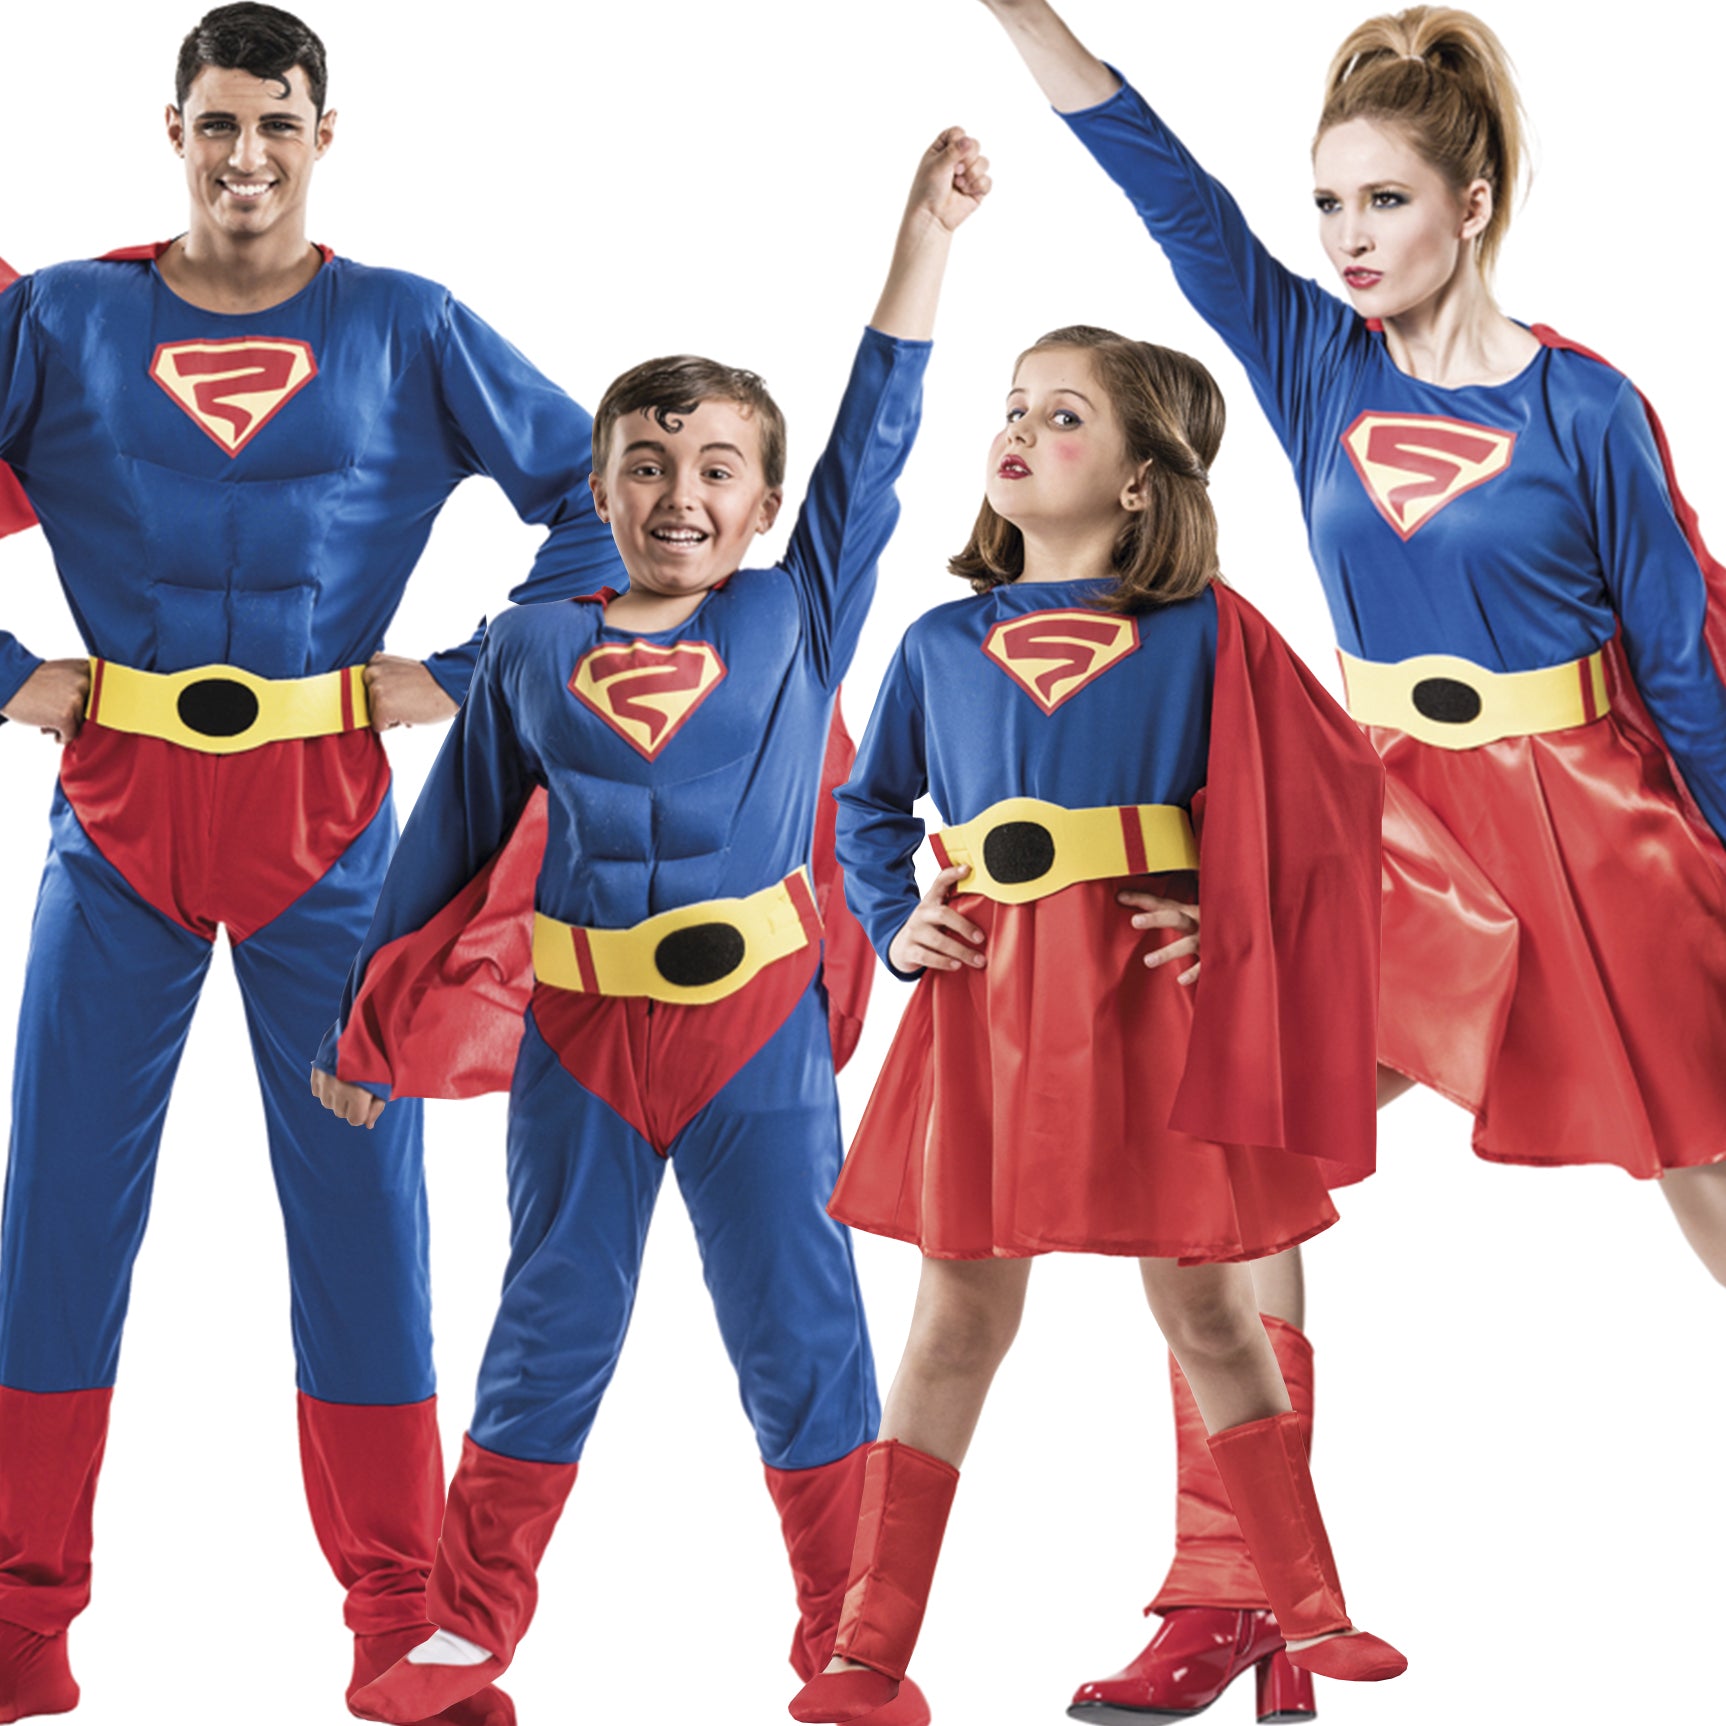 Travestimento Superman Eco per il compleanno del tuo bambino